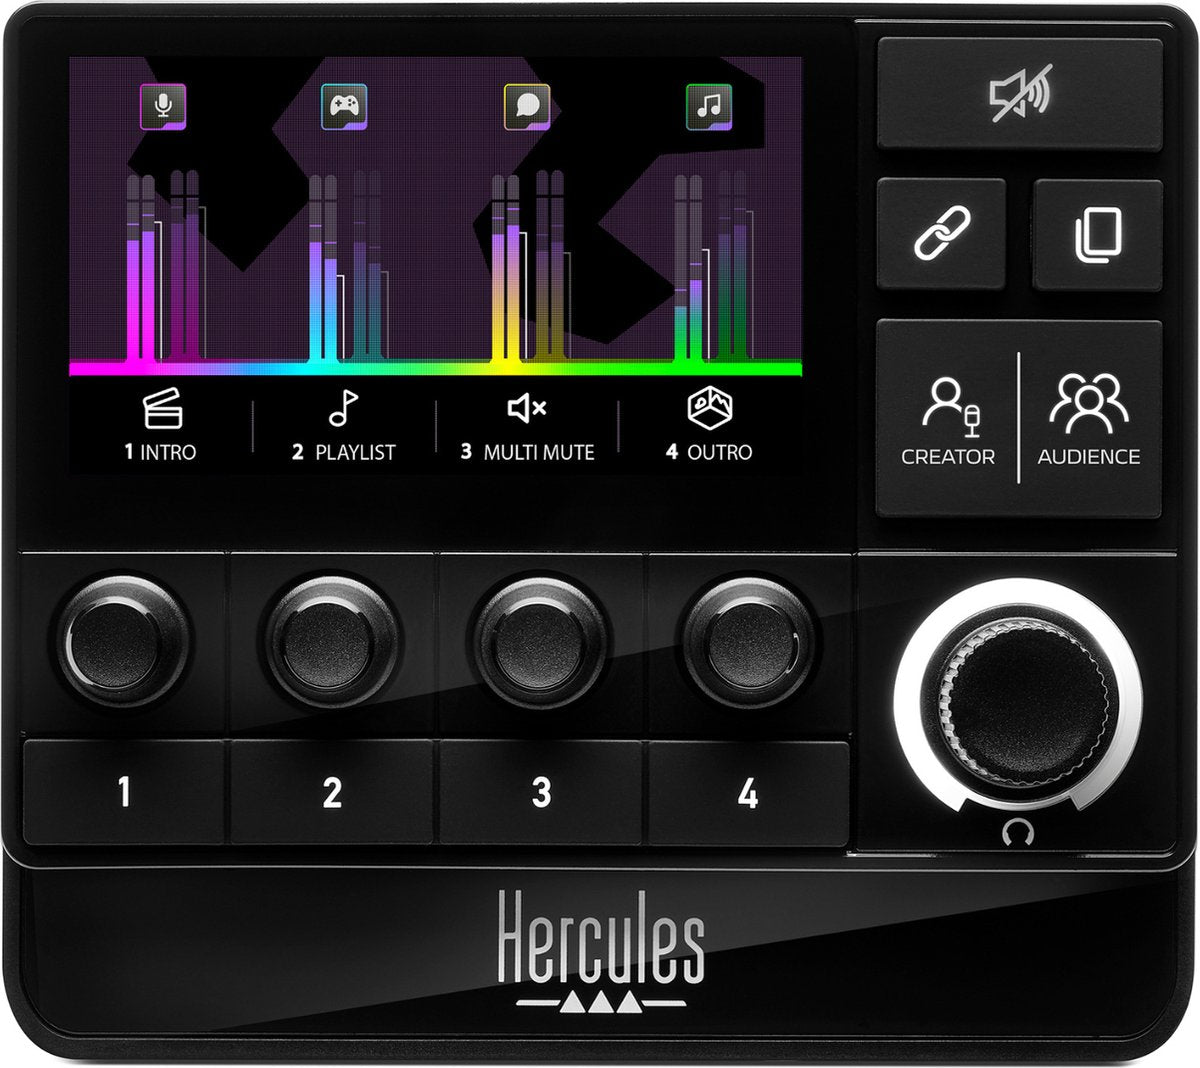 Hercules Stream 200 XLR, professioneller Audio-Controller für die Echtzeitverwaltung von Ersteller-/Publikumsmischungen, mit Mikrofonvorverstärker, LCD-Bildschirm, hochauflösenden Encodern, 4 Aktionstasten